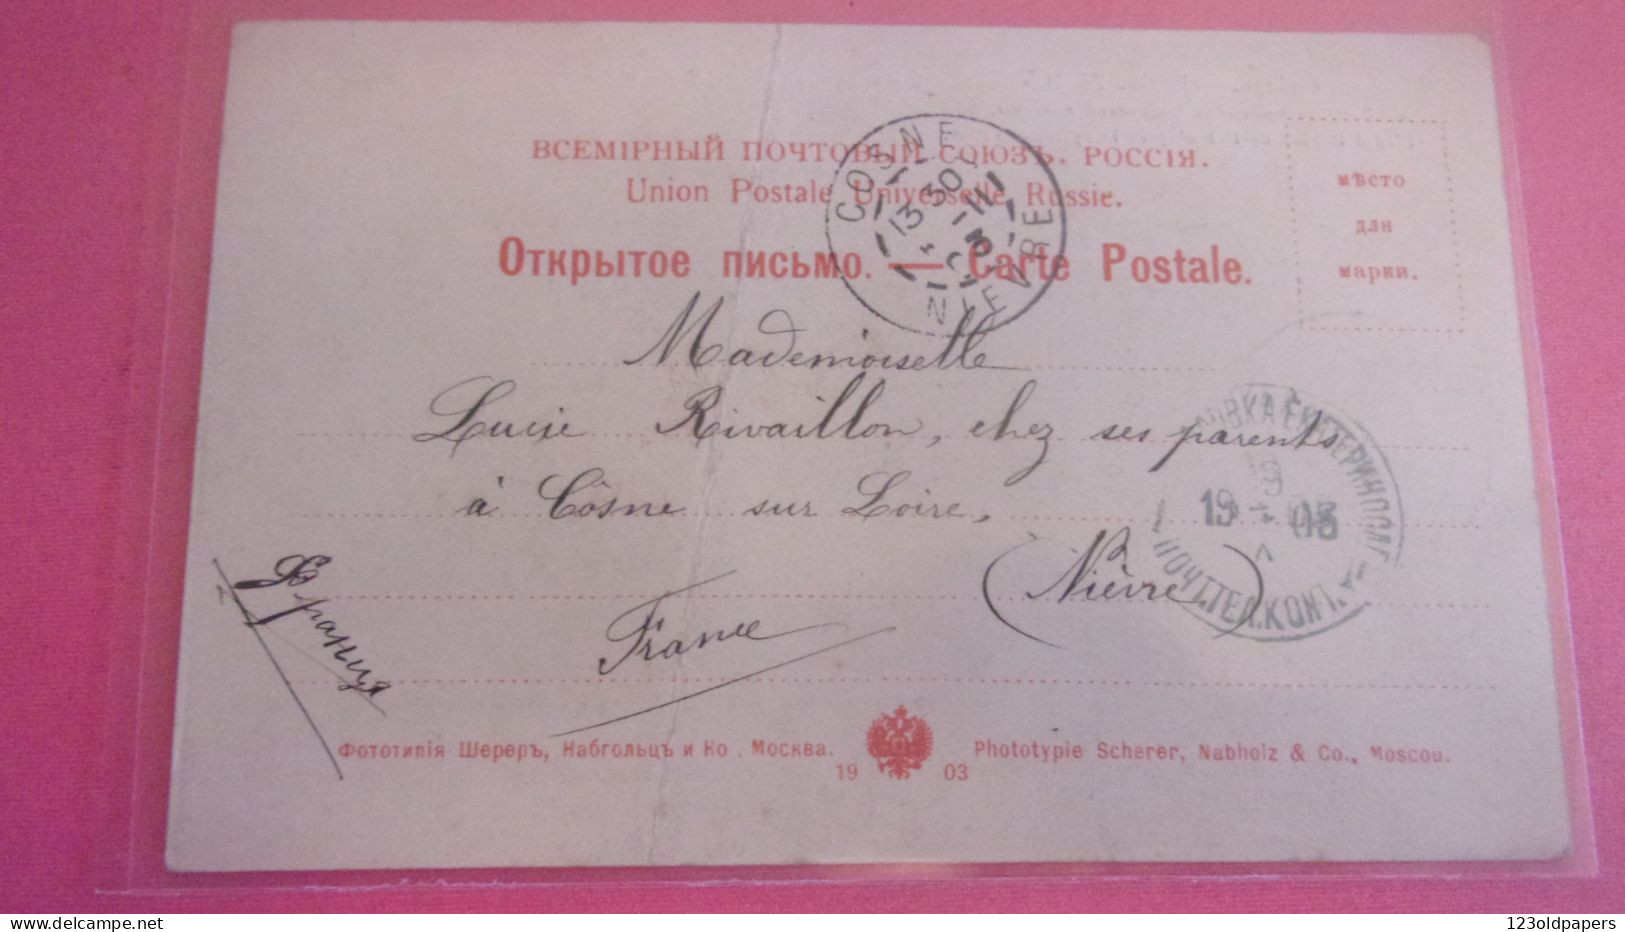 RUSSIE -MINE D'OR SIBERIE -L'EXPLOTATION DE L'OR D'APRES LE SYSTEME VITIM 105 SCHERER NABHLOZ 1903 VERS COSNE NIEVRE FRA - Russia